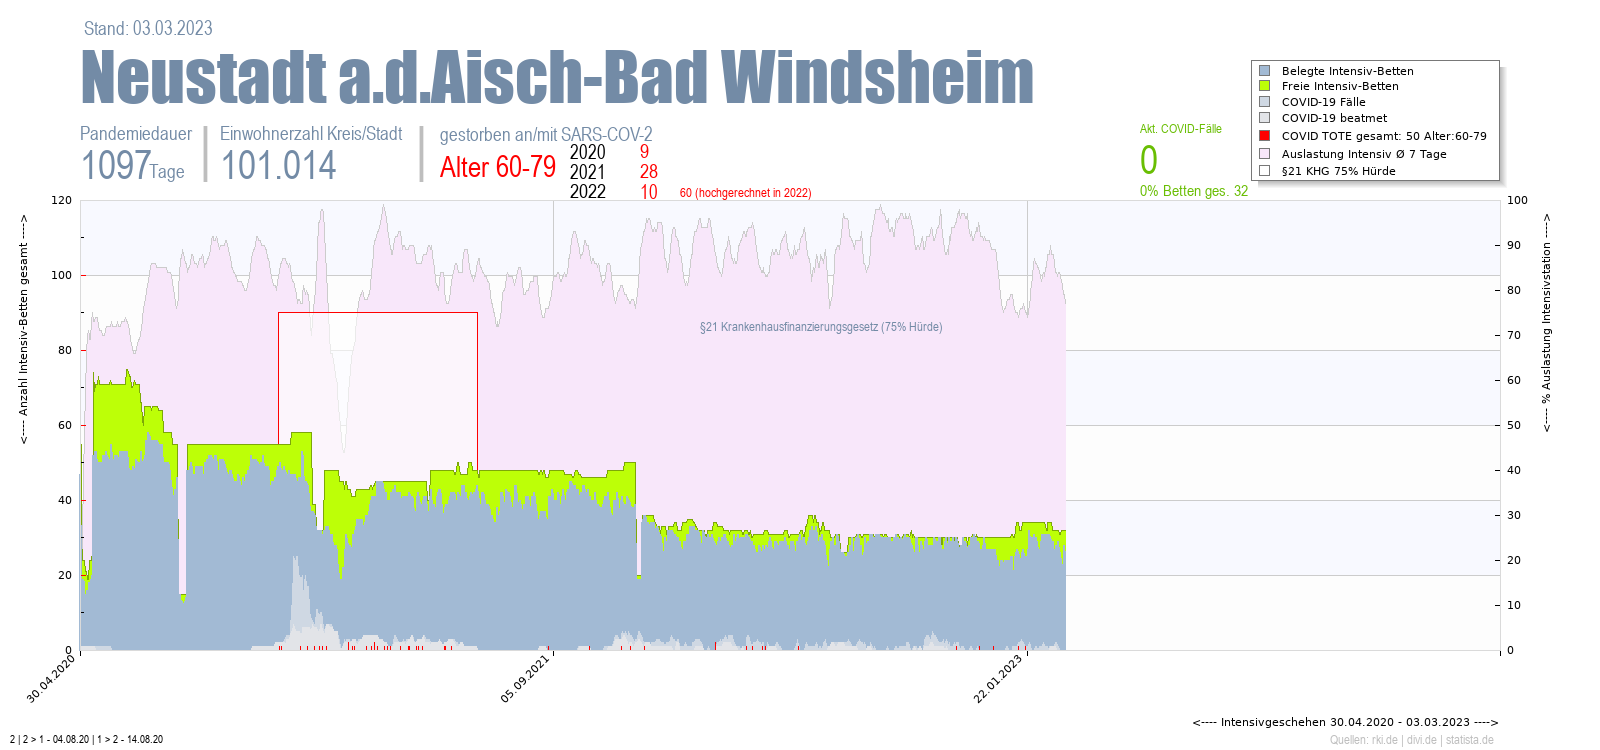 Intensivstation Auslastung Neustadt a.d.Aisch-Bad Windsheim Alter 0-4